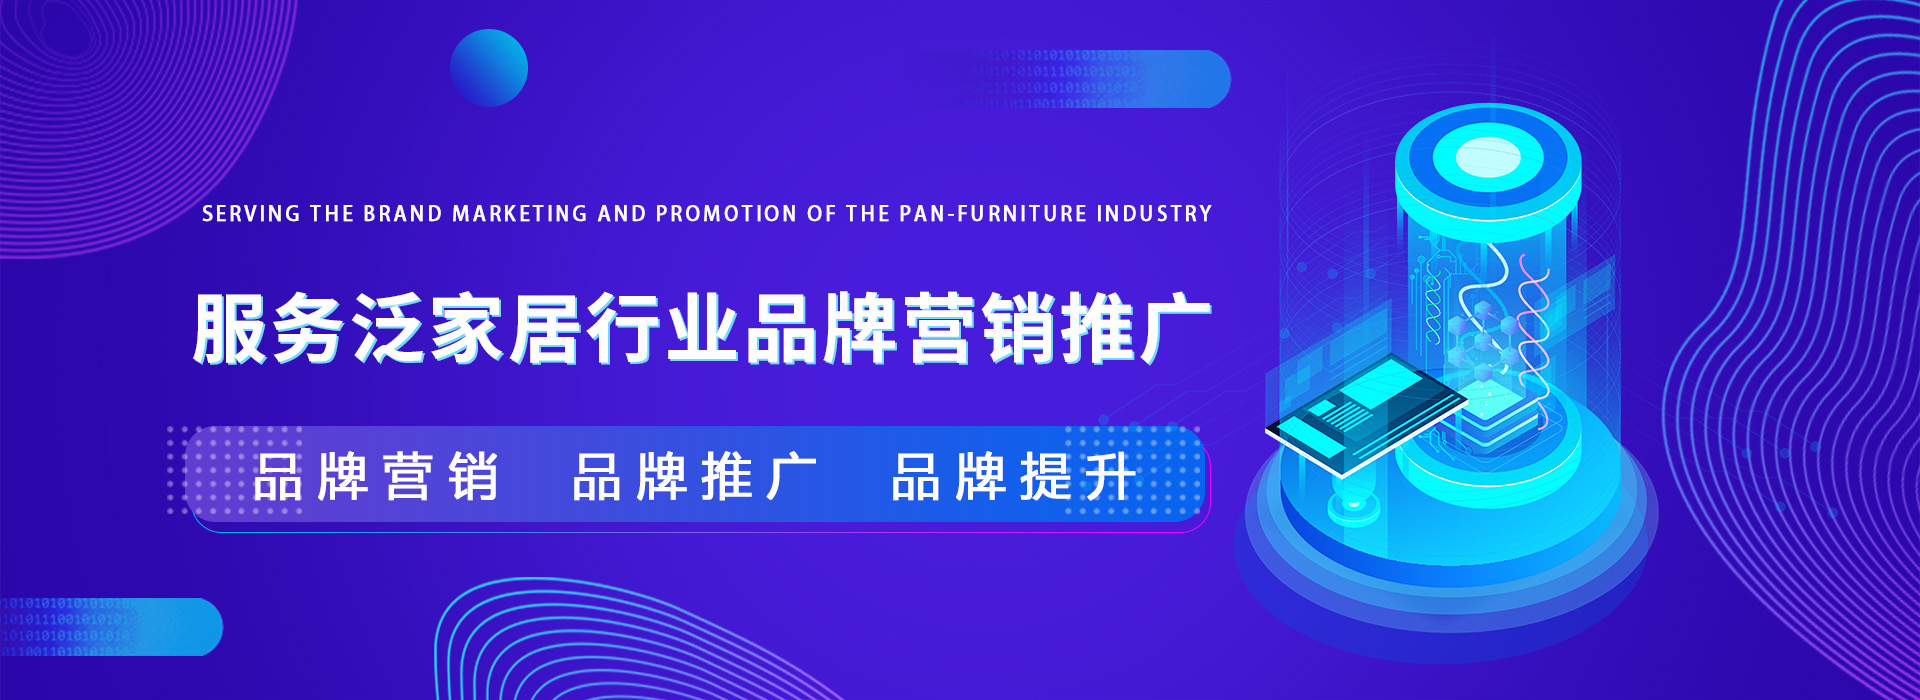 惠州电脑PC端全网整合营销推广